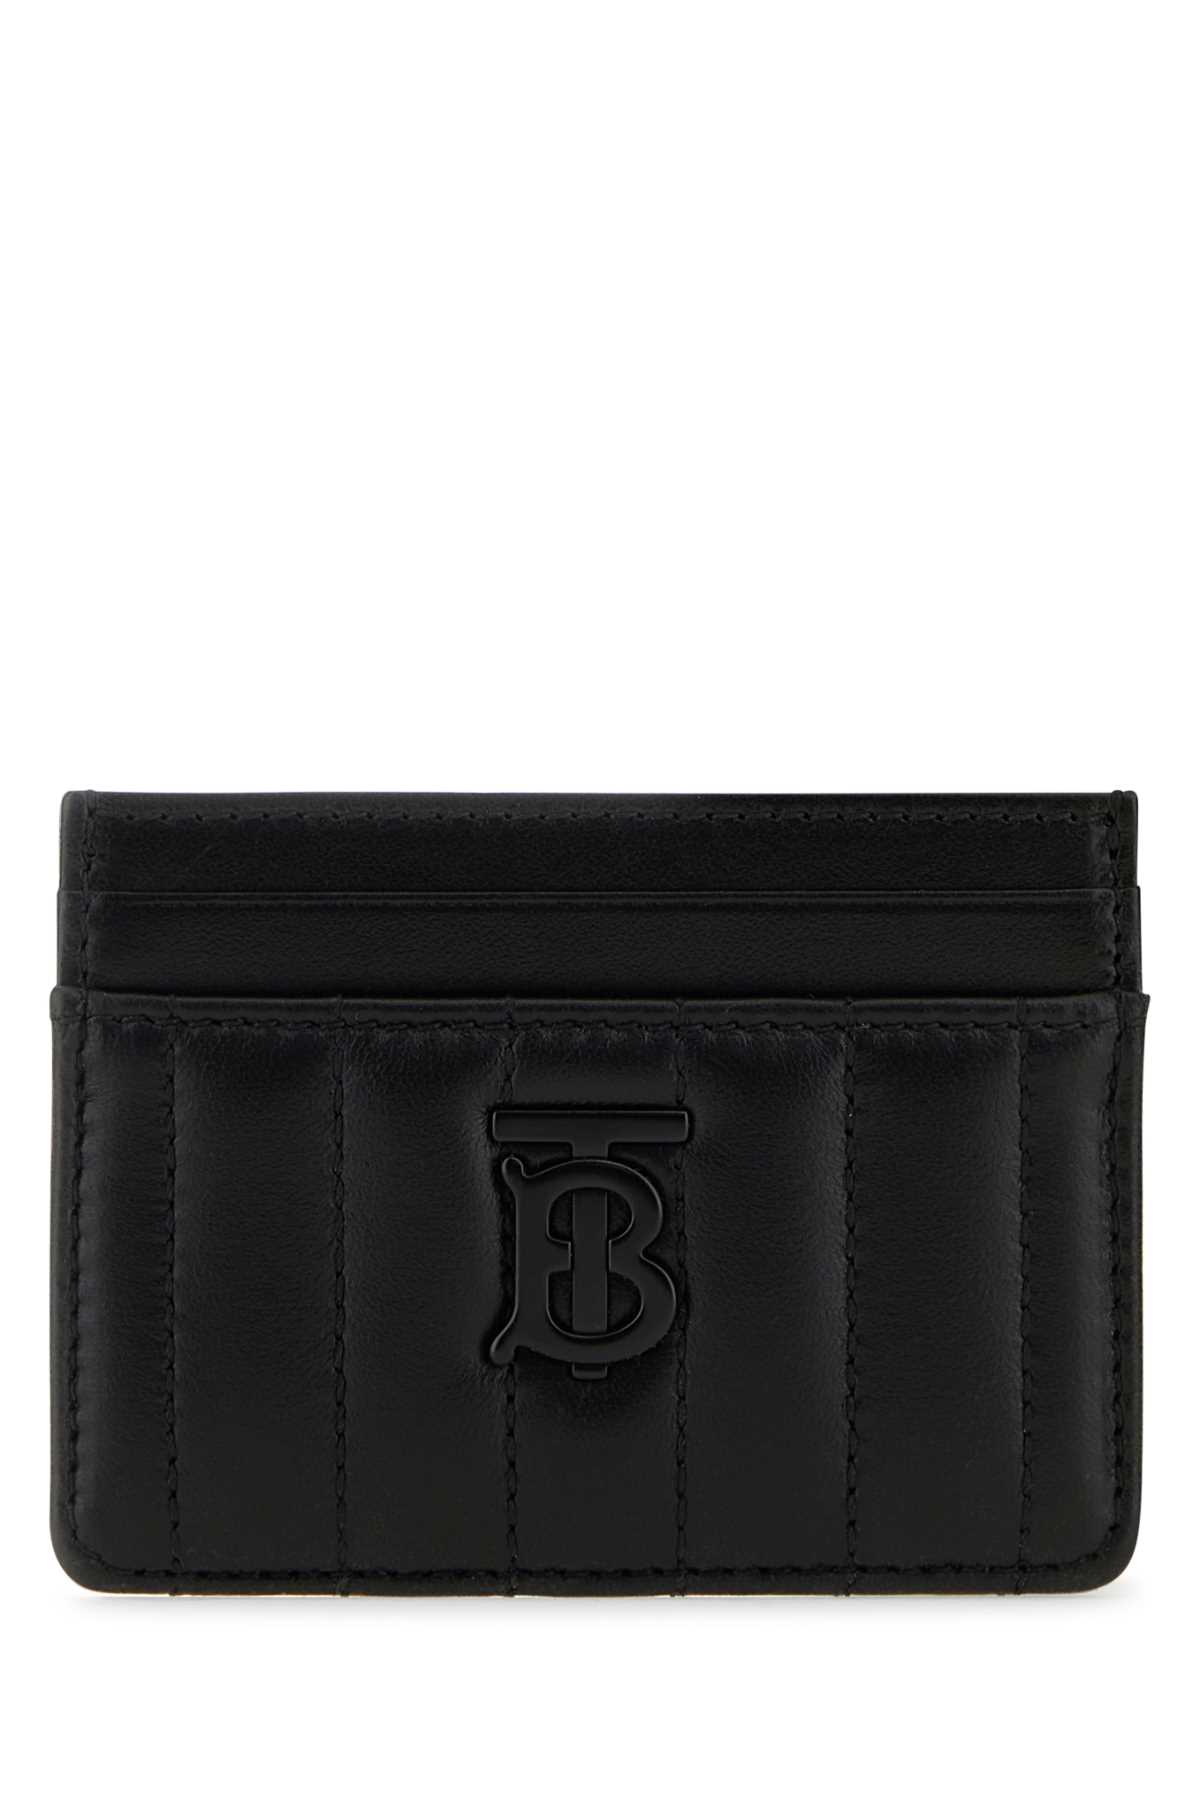 Shop Burberry Black Leather Card Holder In Blackblack